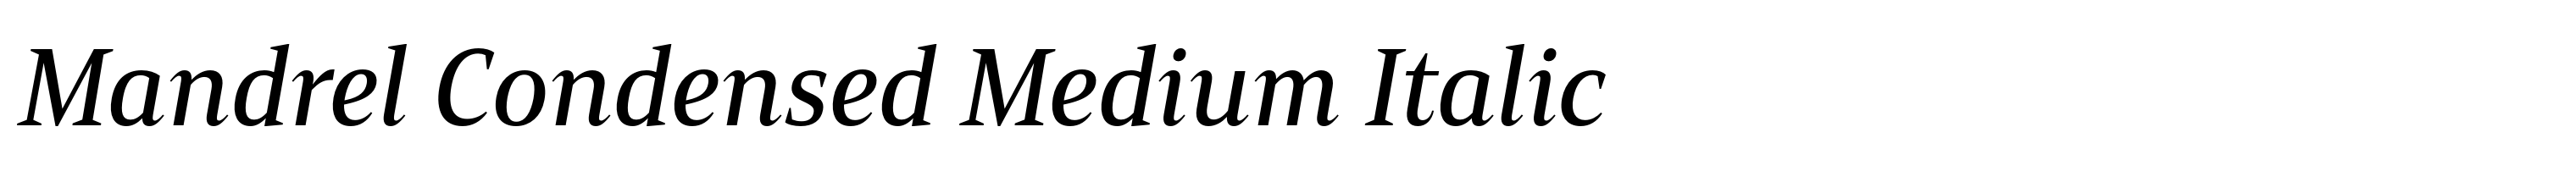 Mandrel Condensed Medium Italic